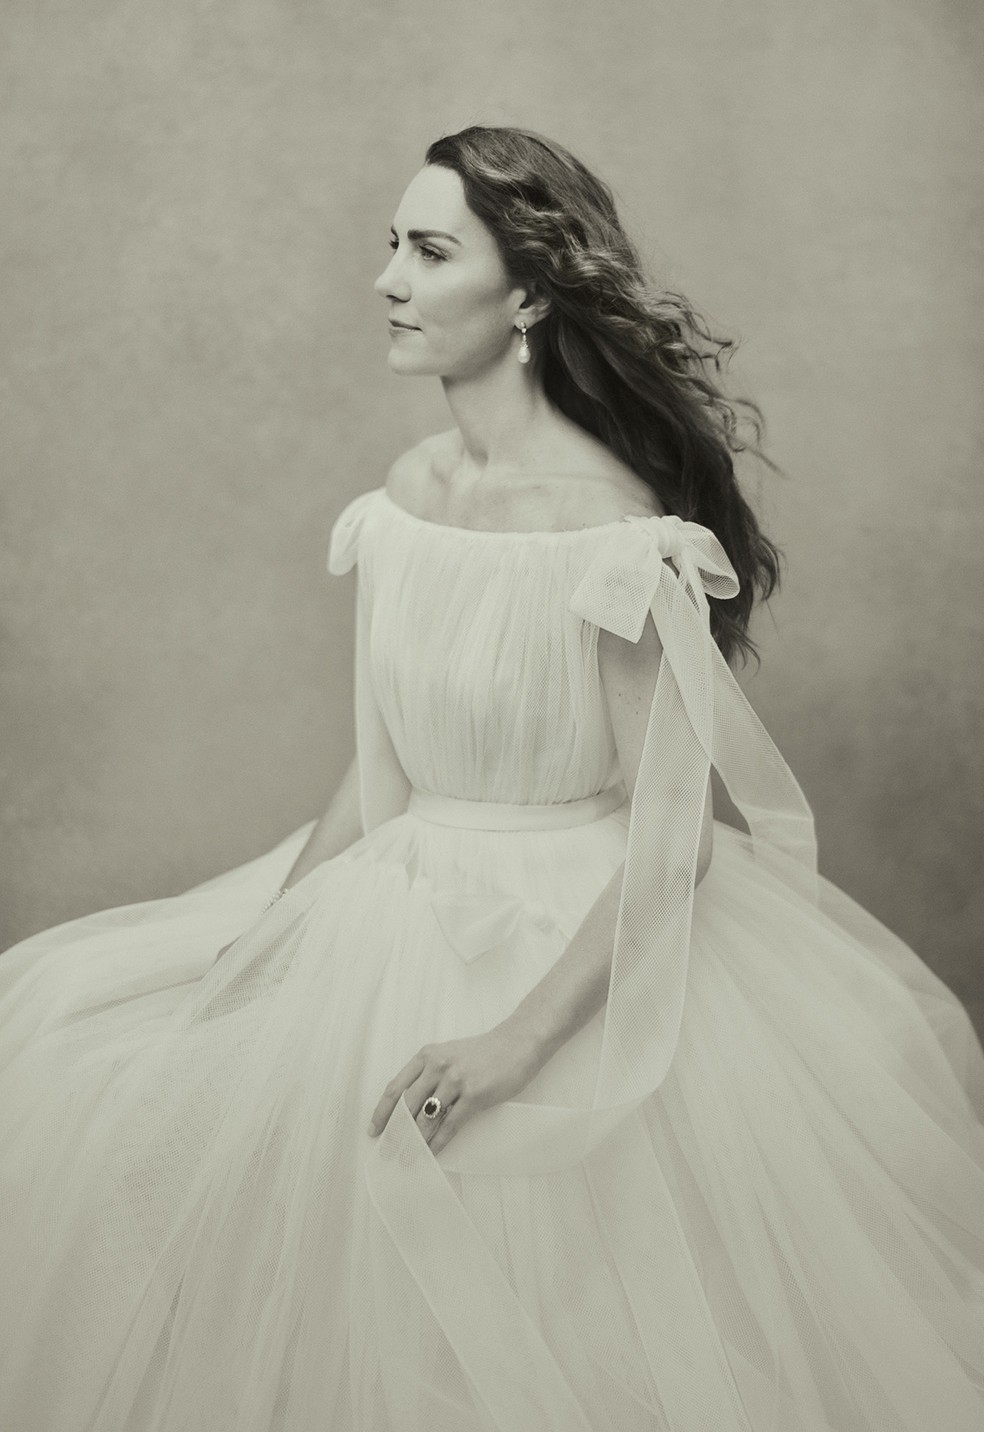 Imagem em preto e branco mostra Kate Middleton de vestido branco, olhando para a frente